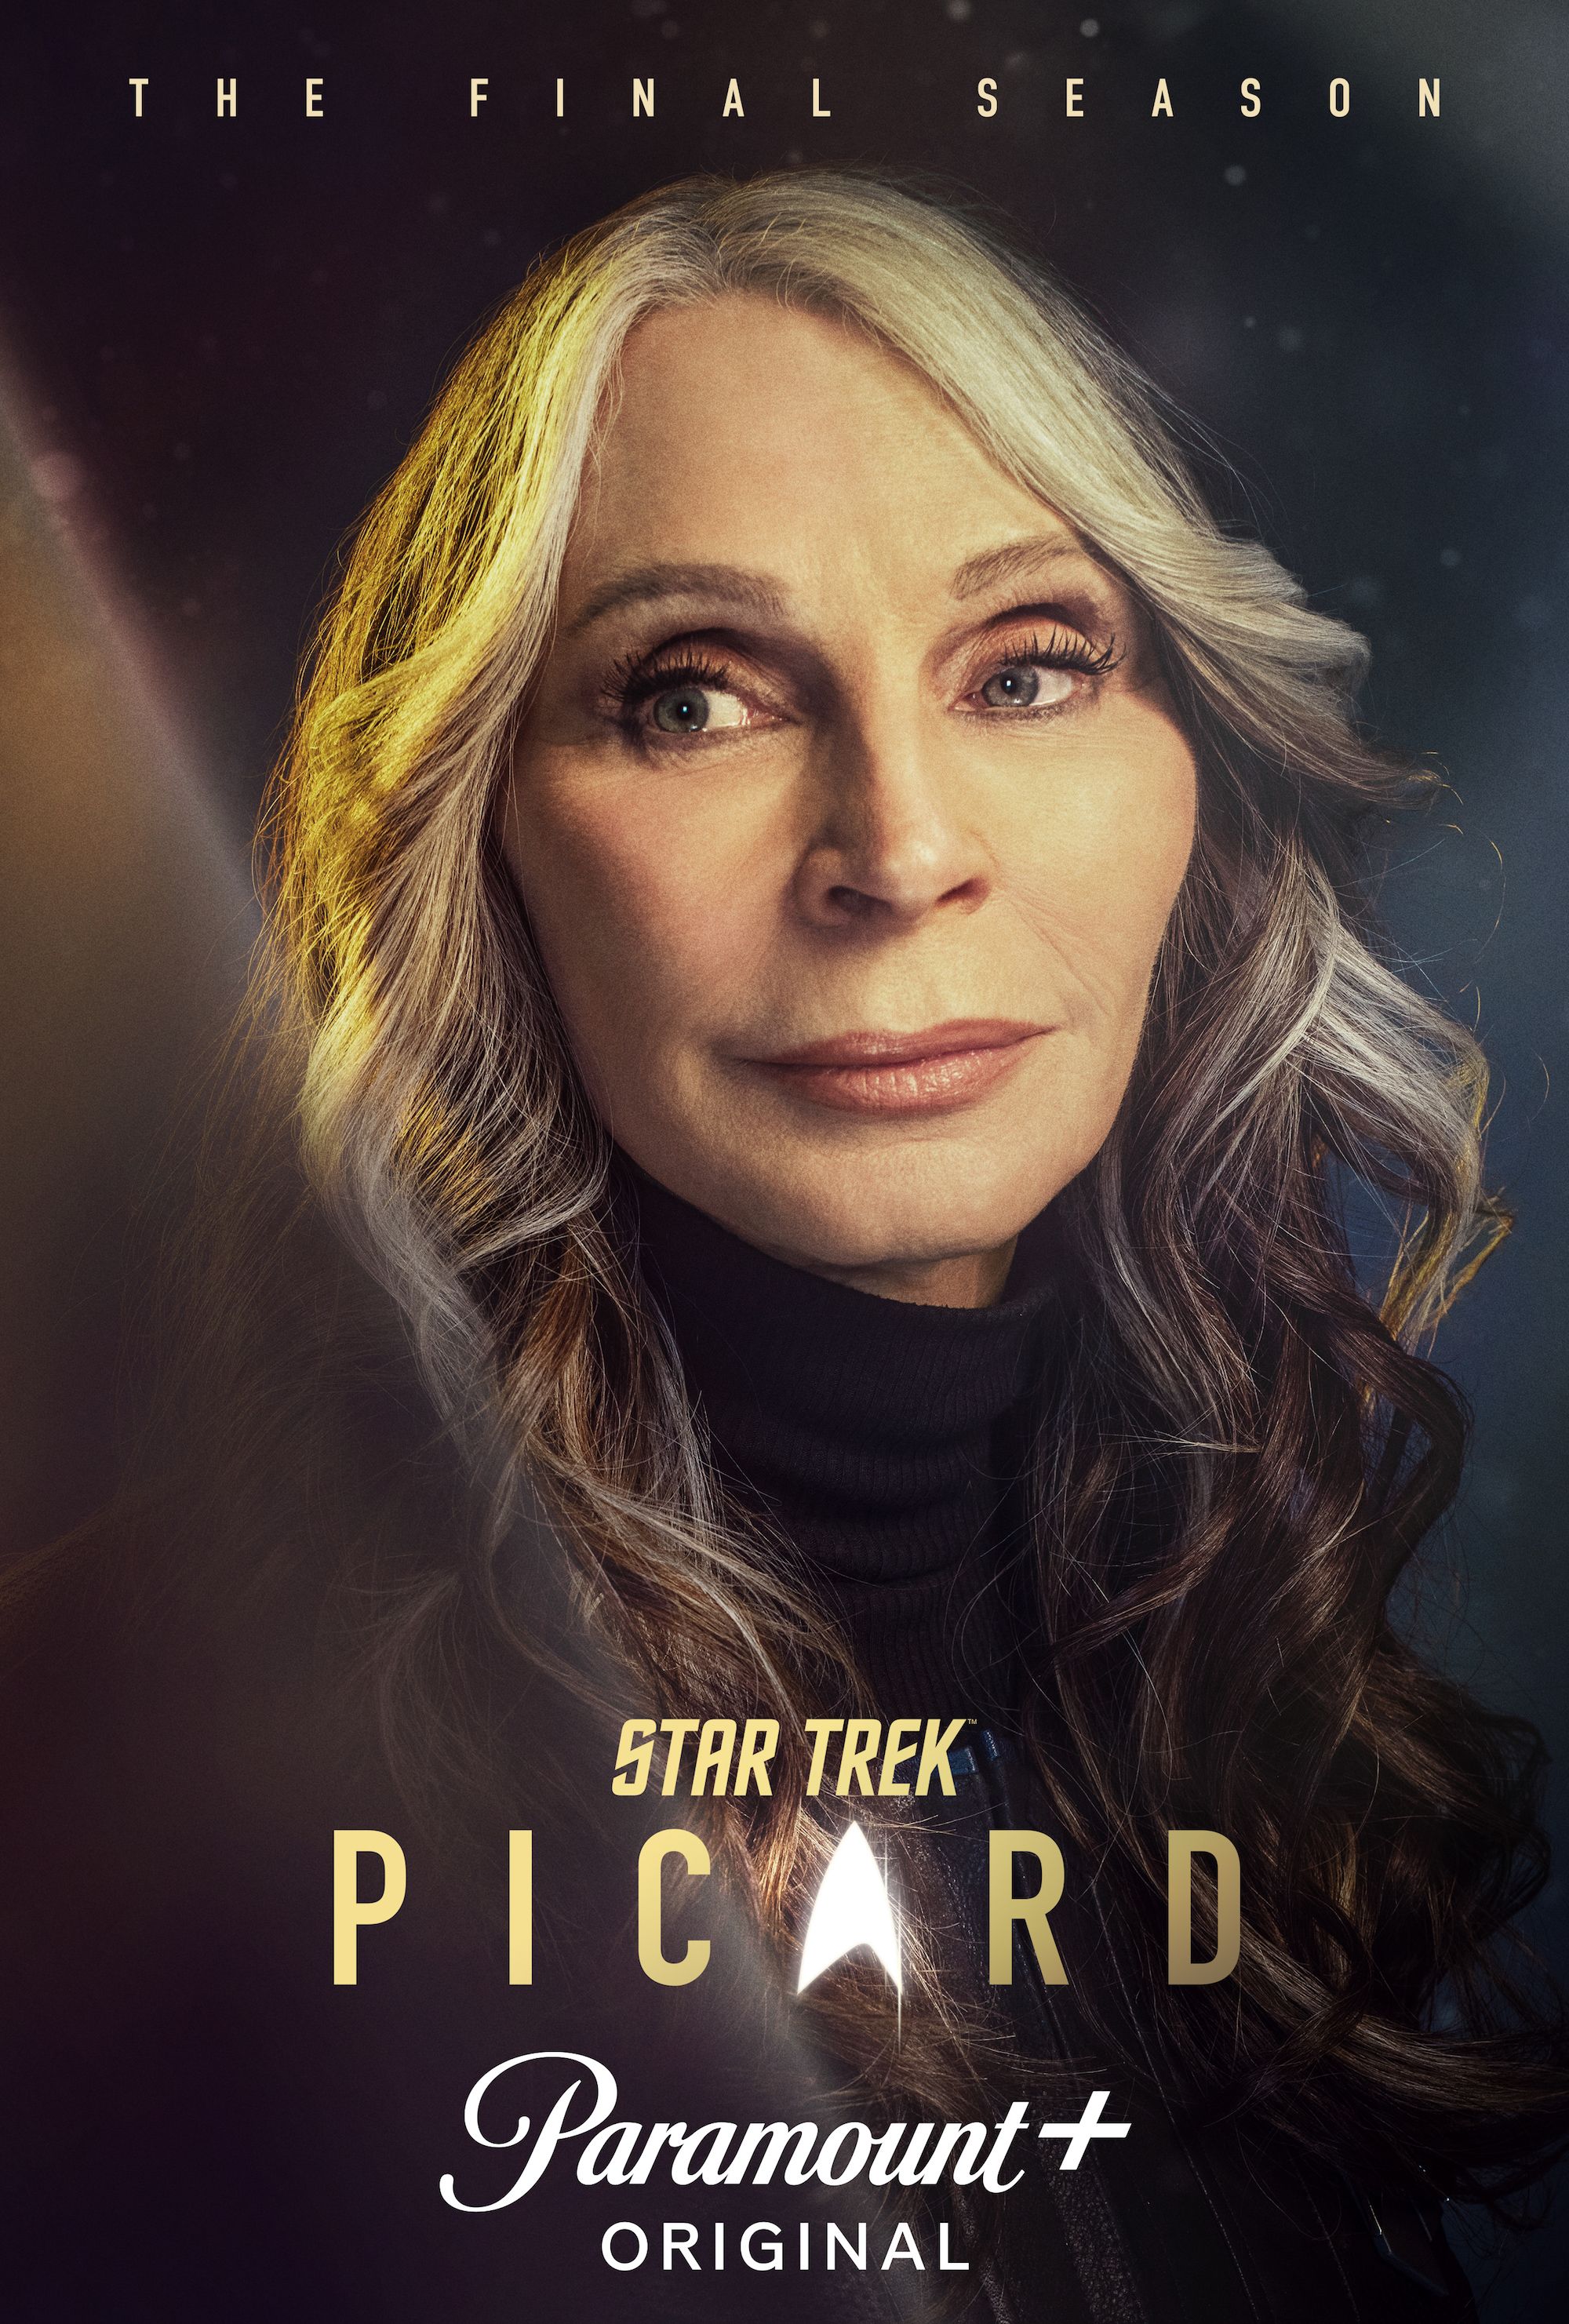 Gates McFadden as Beverly Crusher in Star Trek Picard Season 3